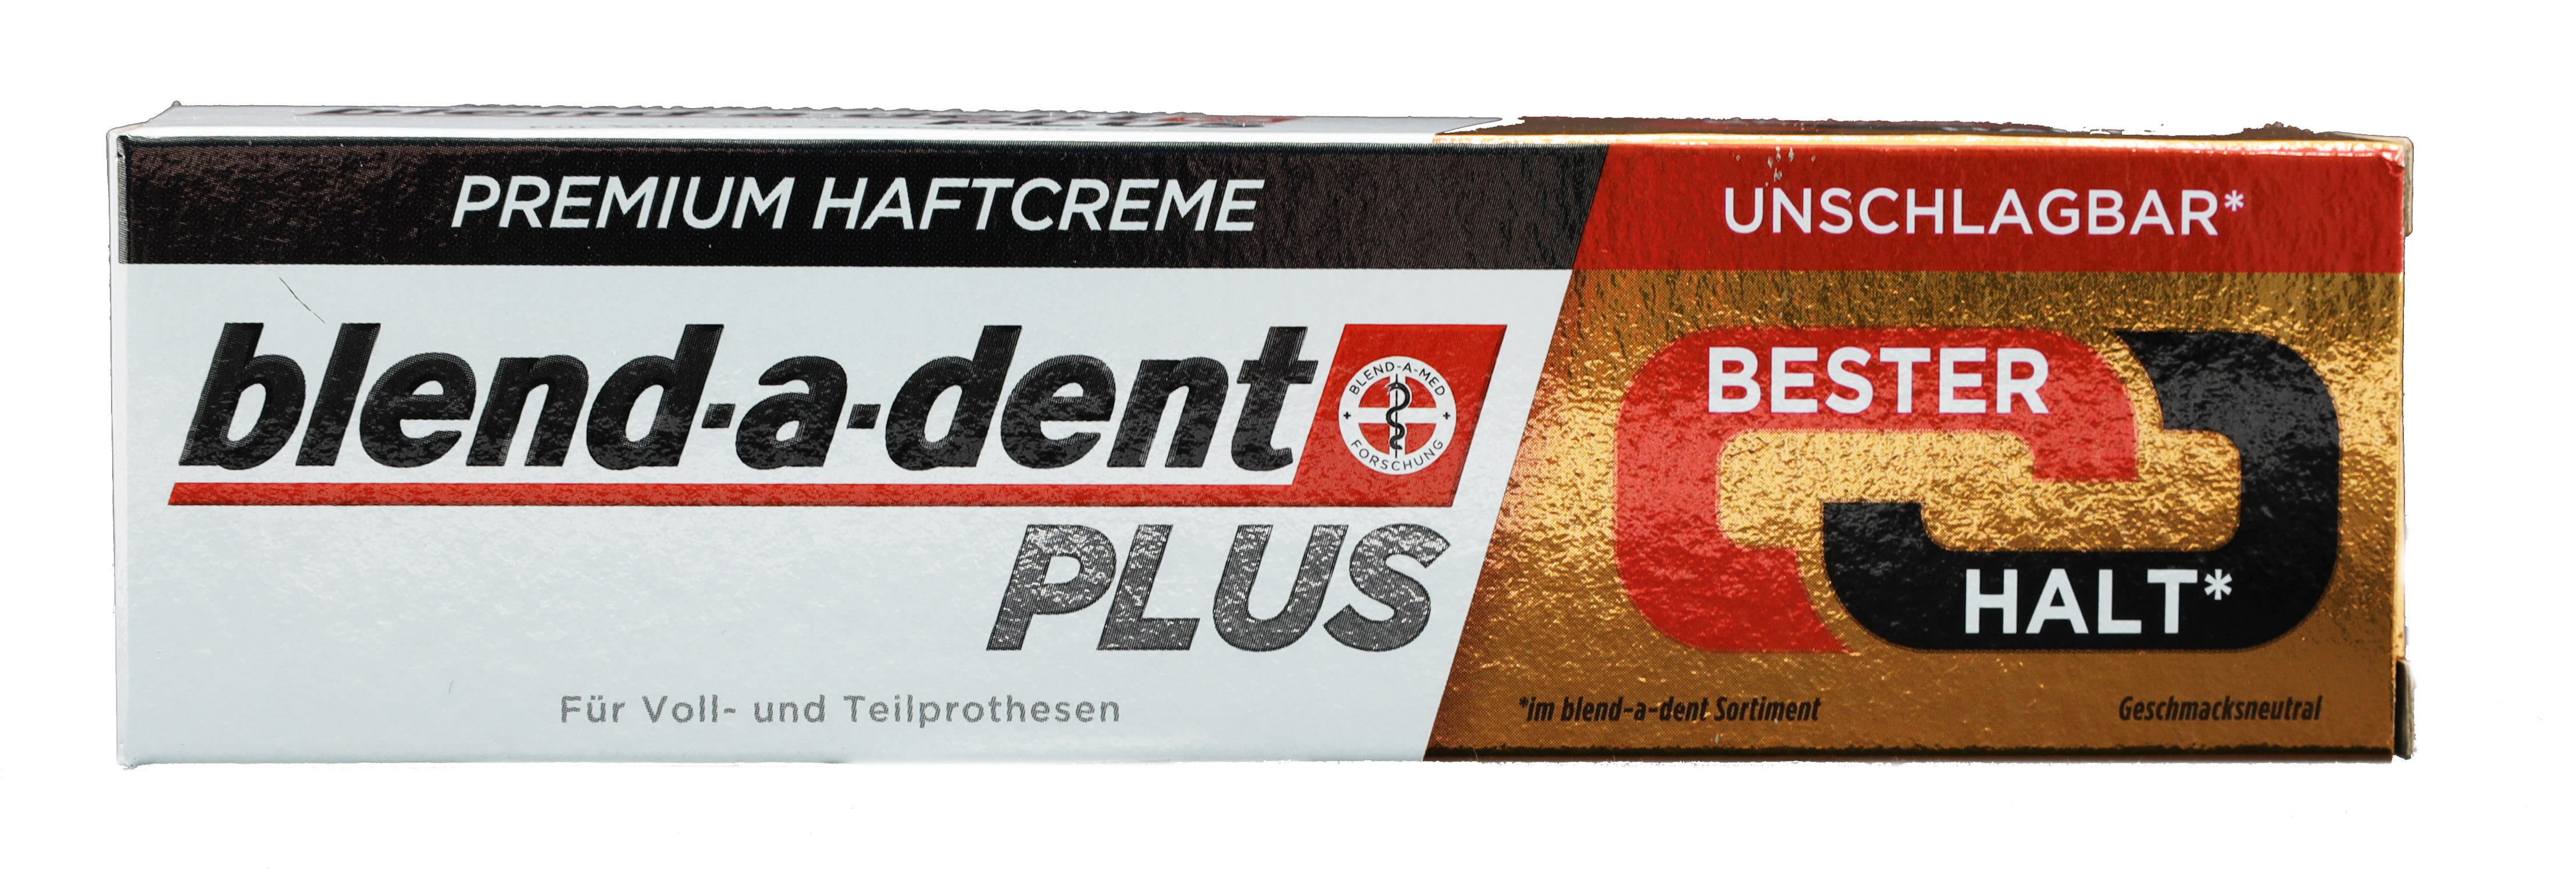 blend-a-dent PLUS Premium Haftcreme 40gr